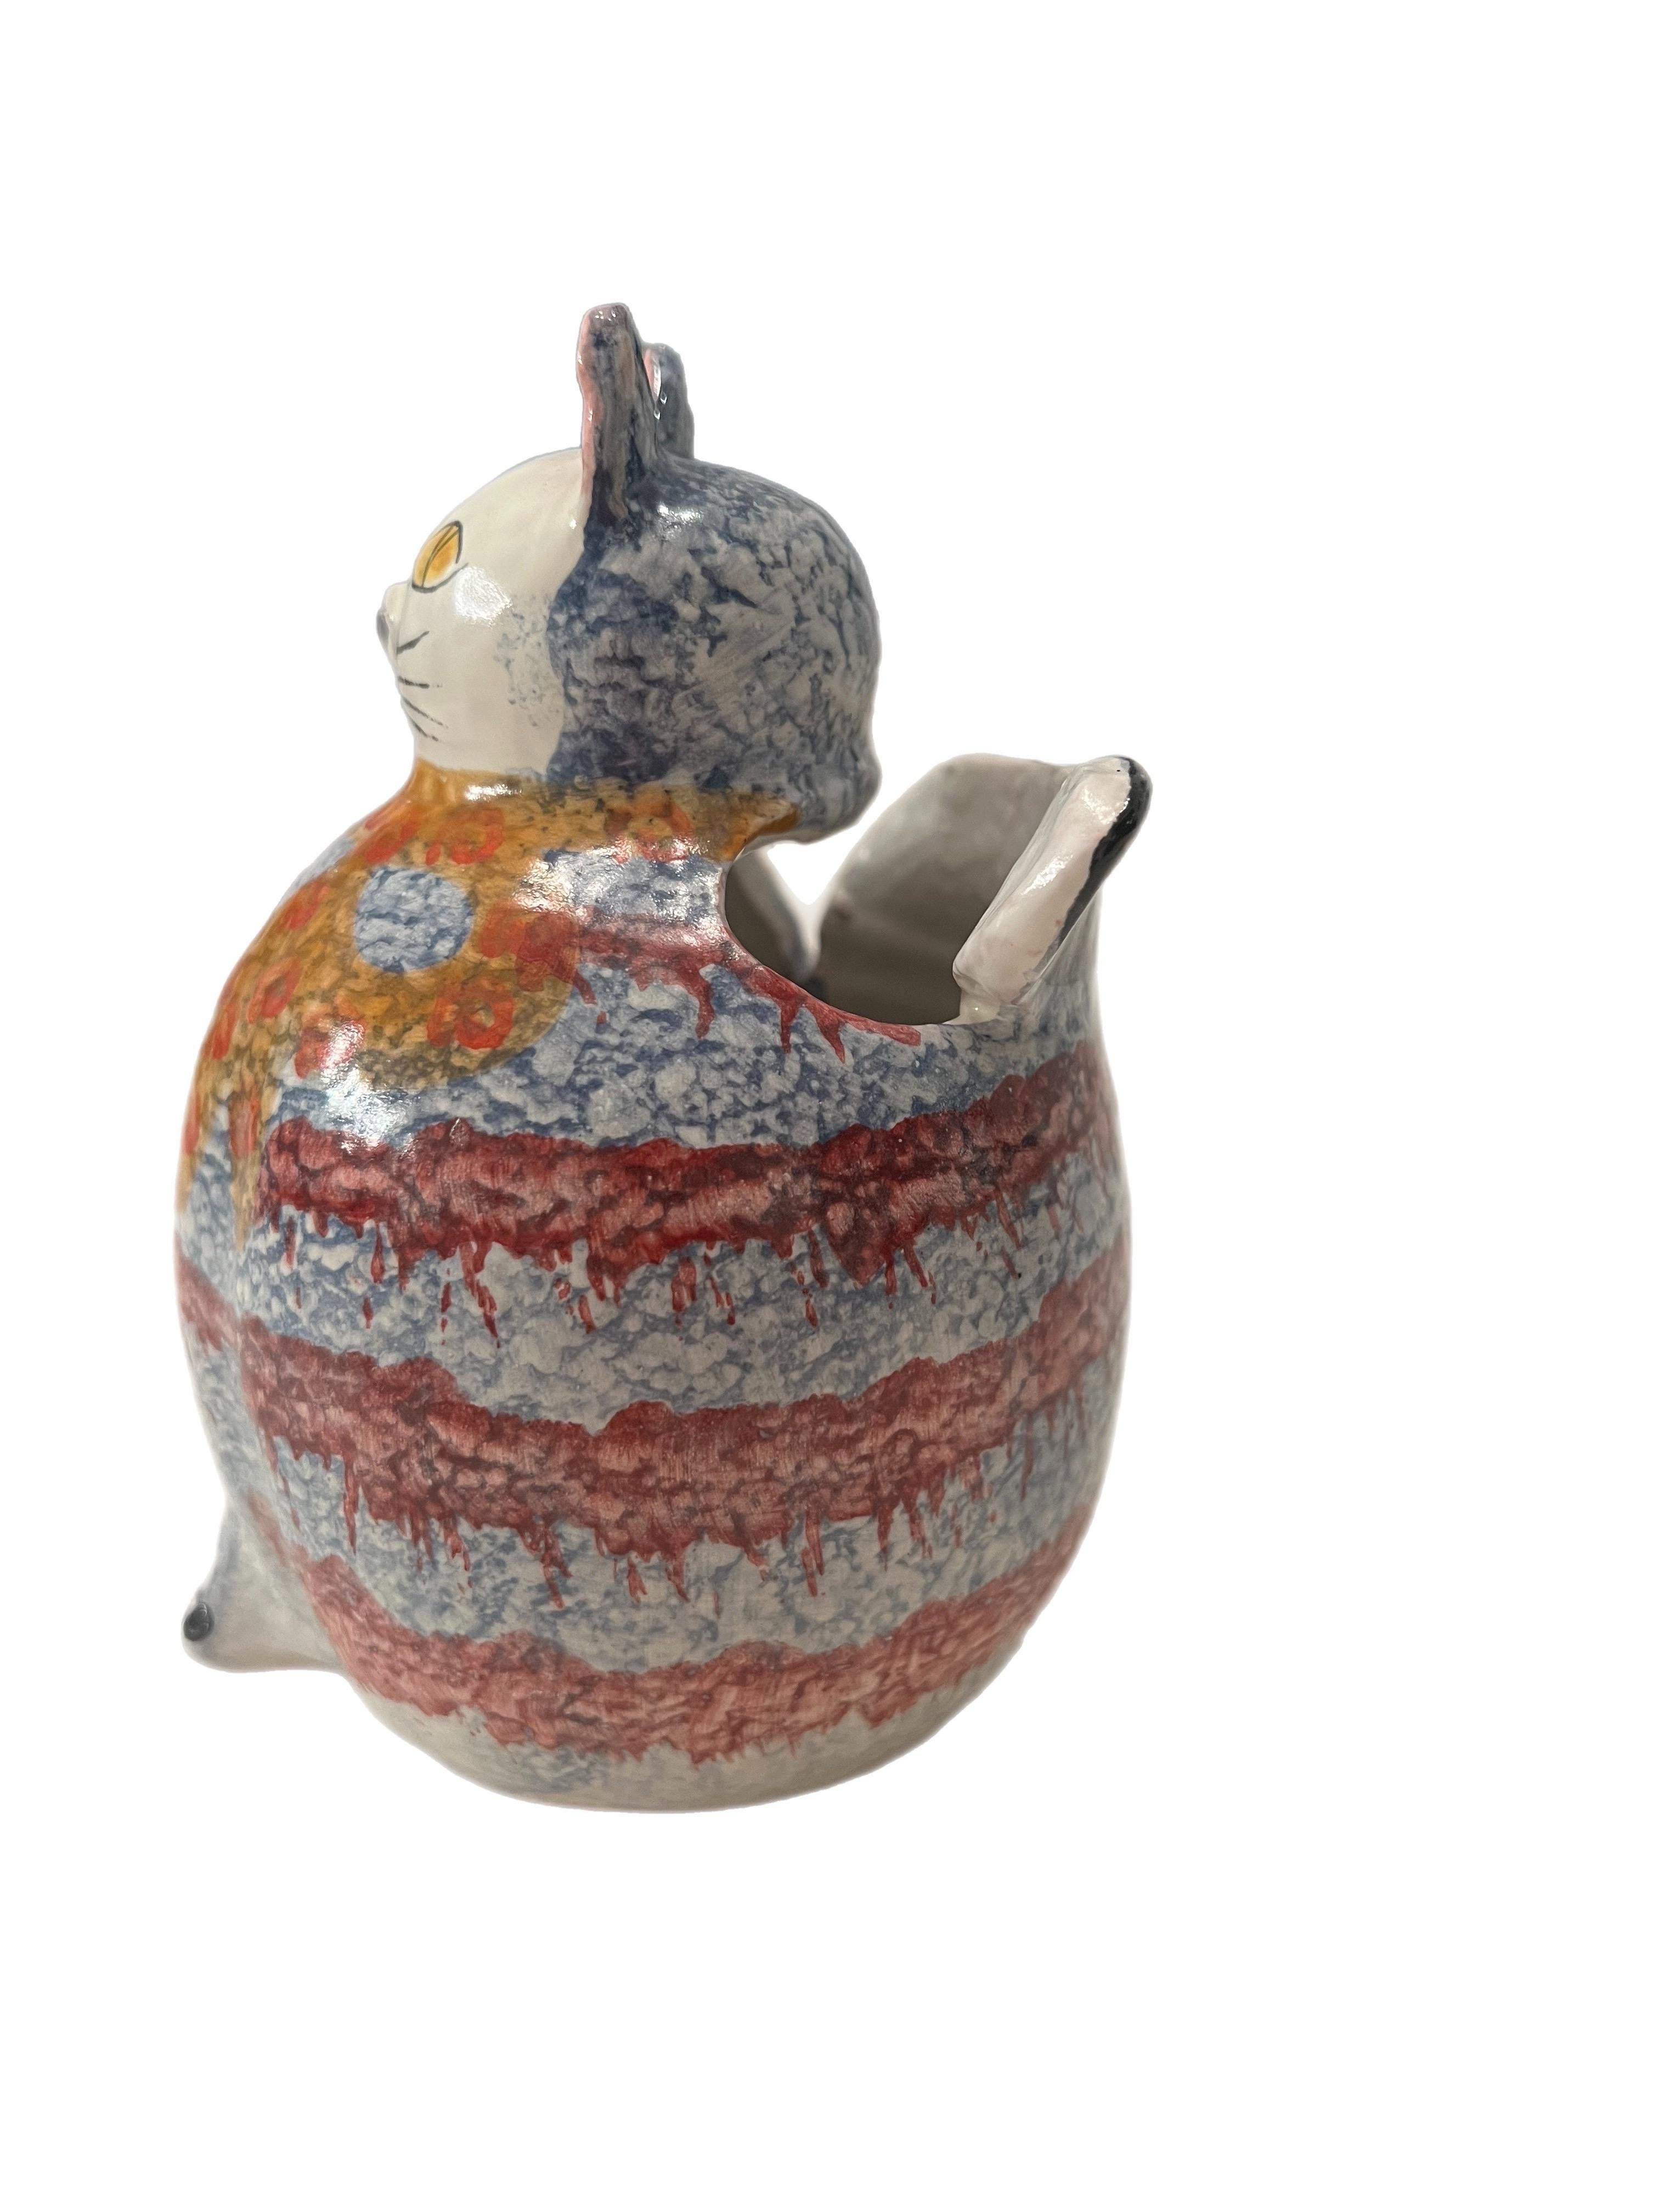 Post-Modern Vintage 1970s Italian Ars Hand-Painted Ceramic Cat Utensil Holder or Vase For Sale